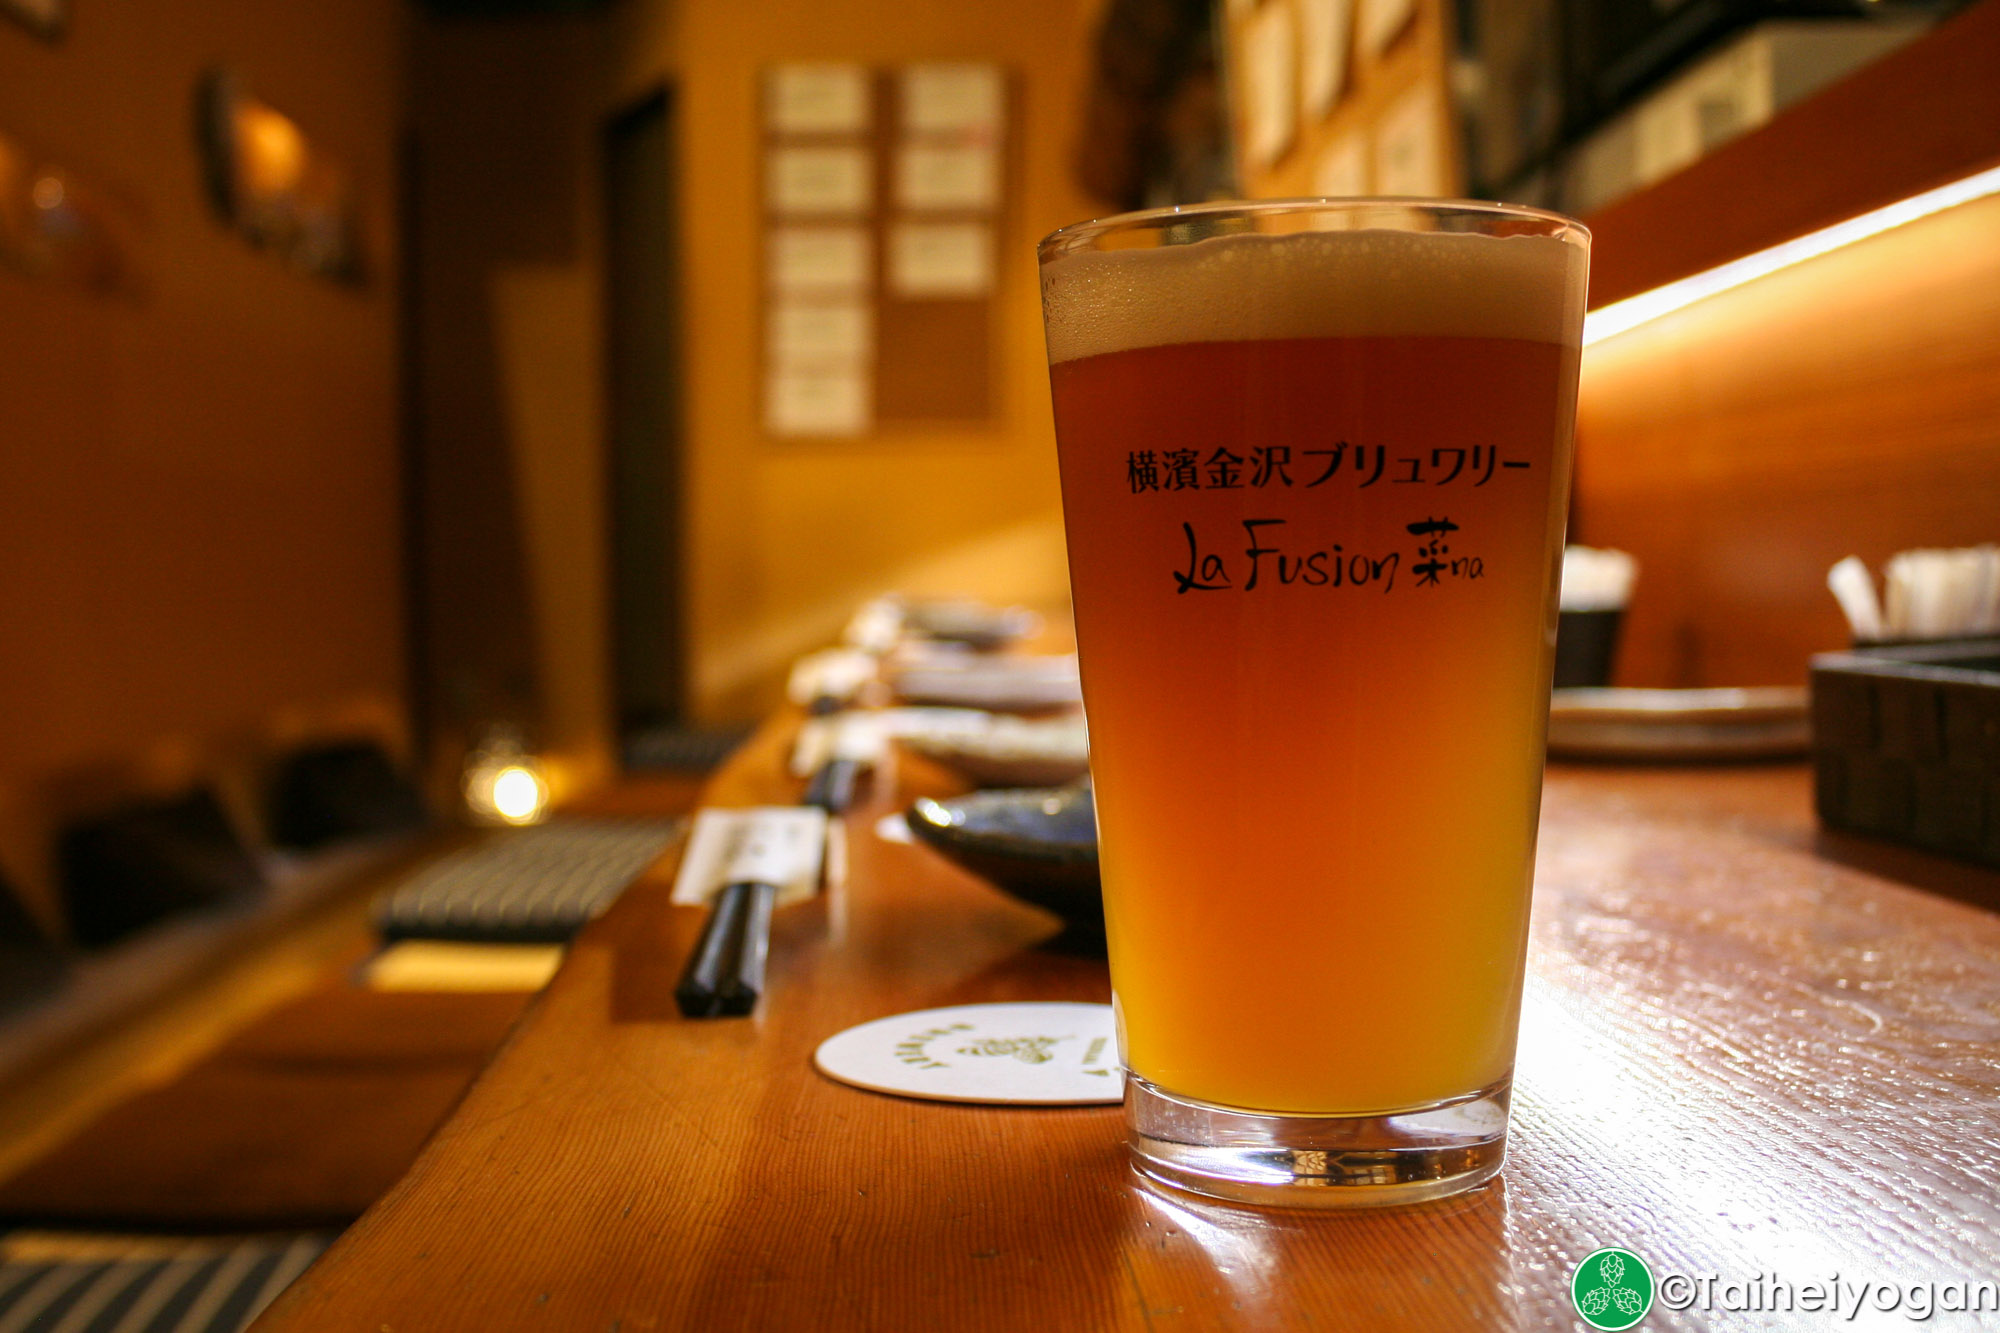 横濱金沢ブルワリーLa Fusion・Yokohama Kanazawa Brewery - La Fusion - Menu - Craft Beer